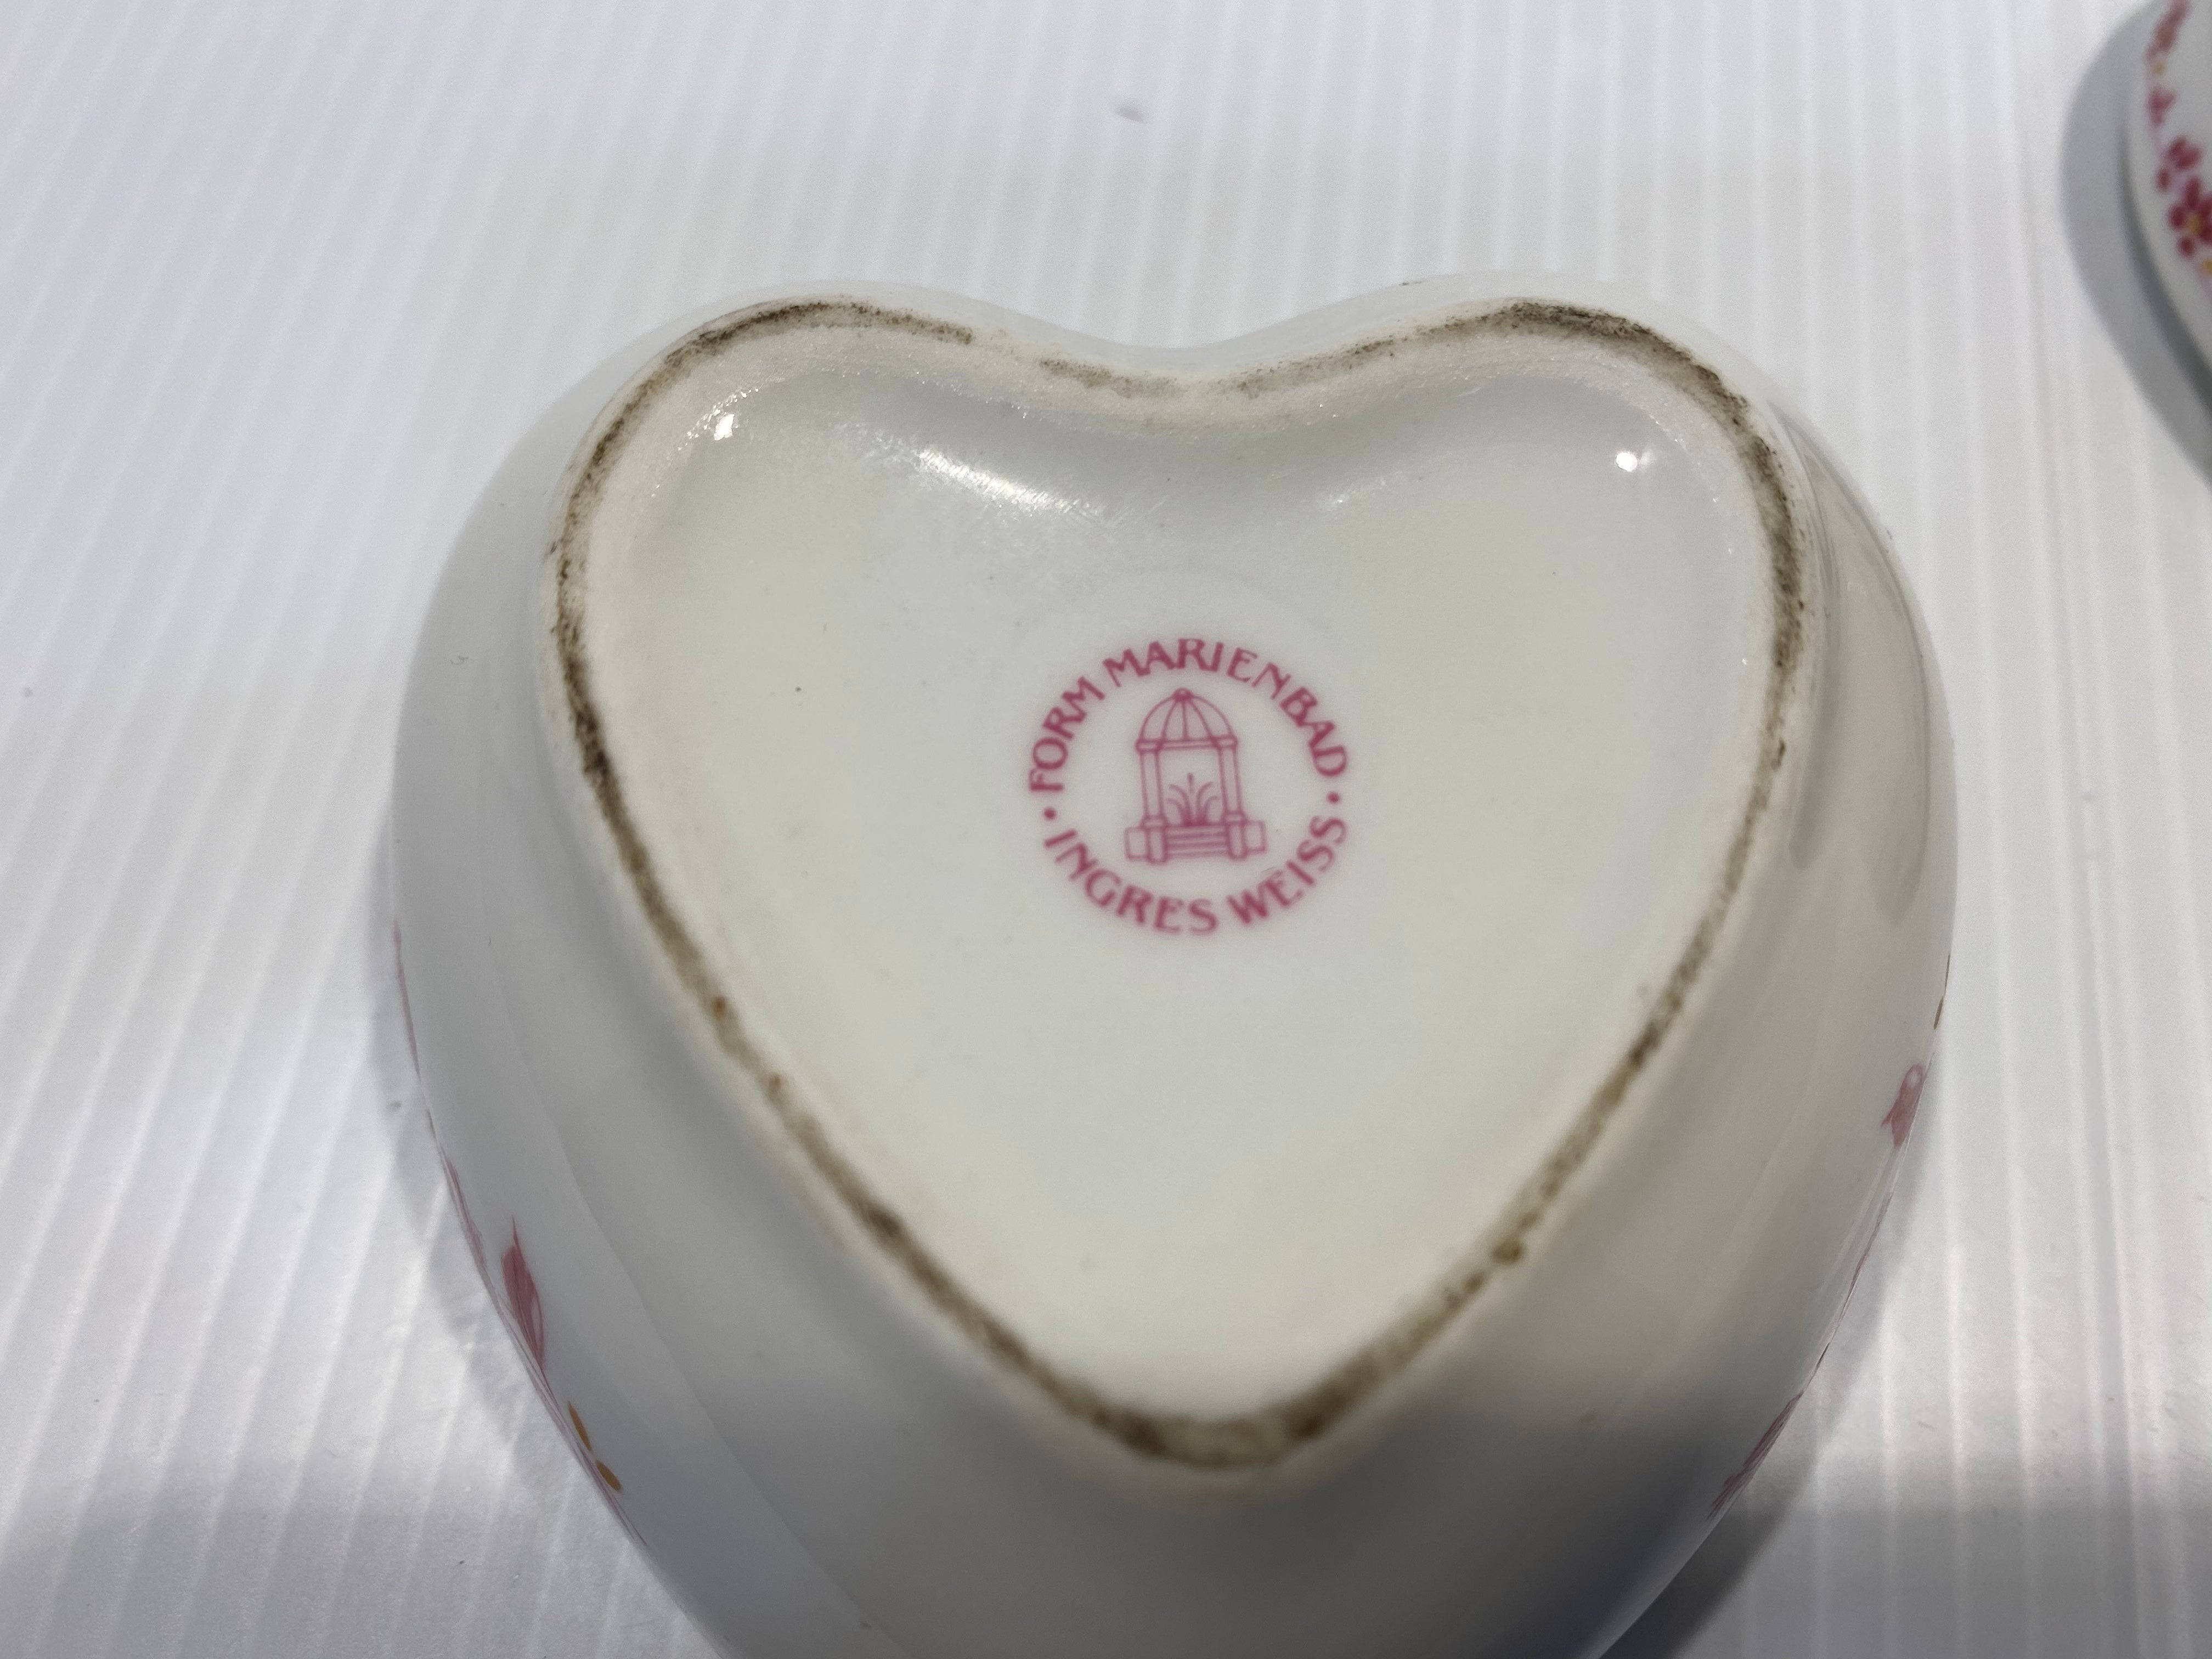 Ingres Weiss Marinbad porcelain heart